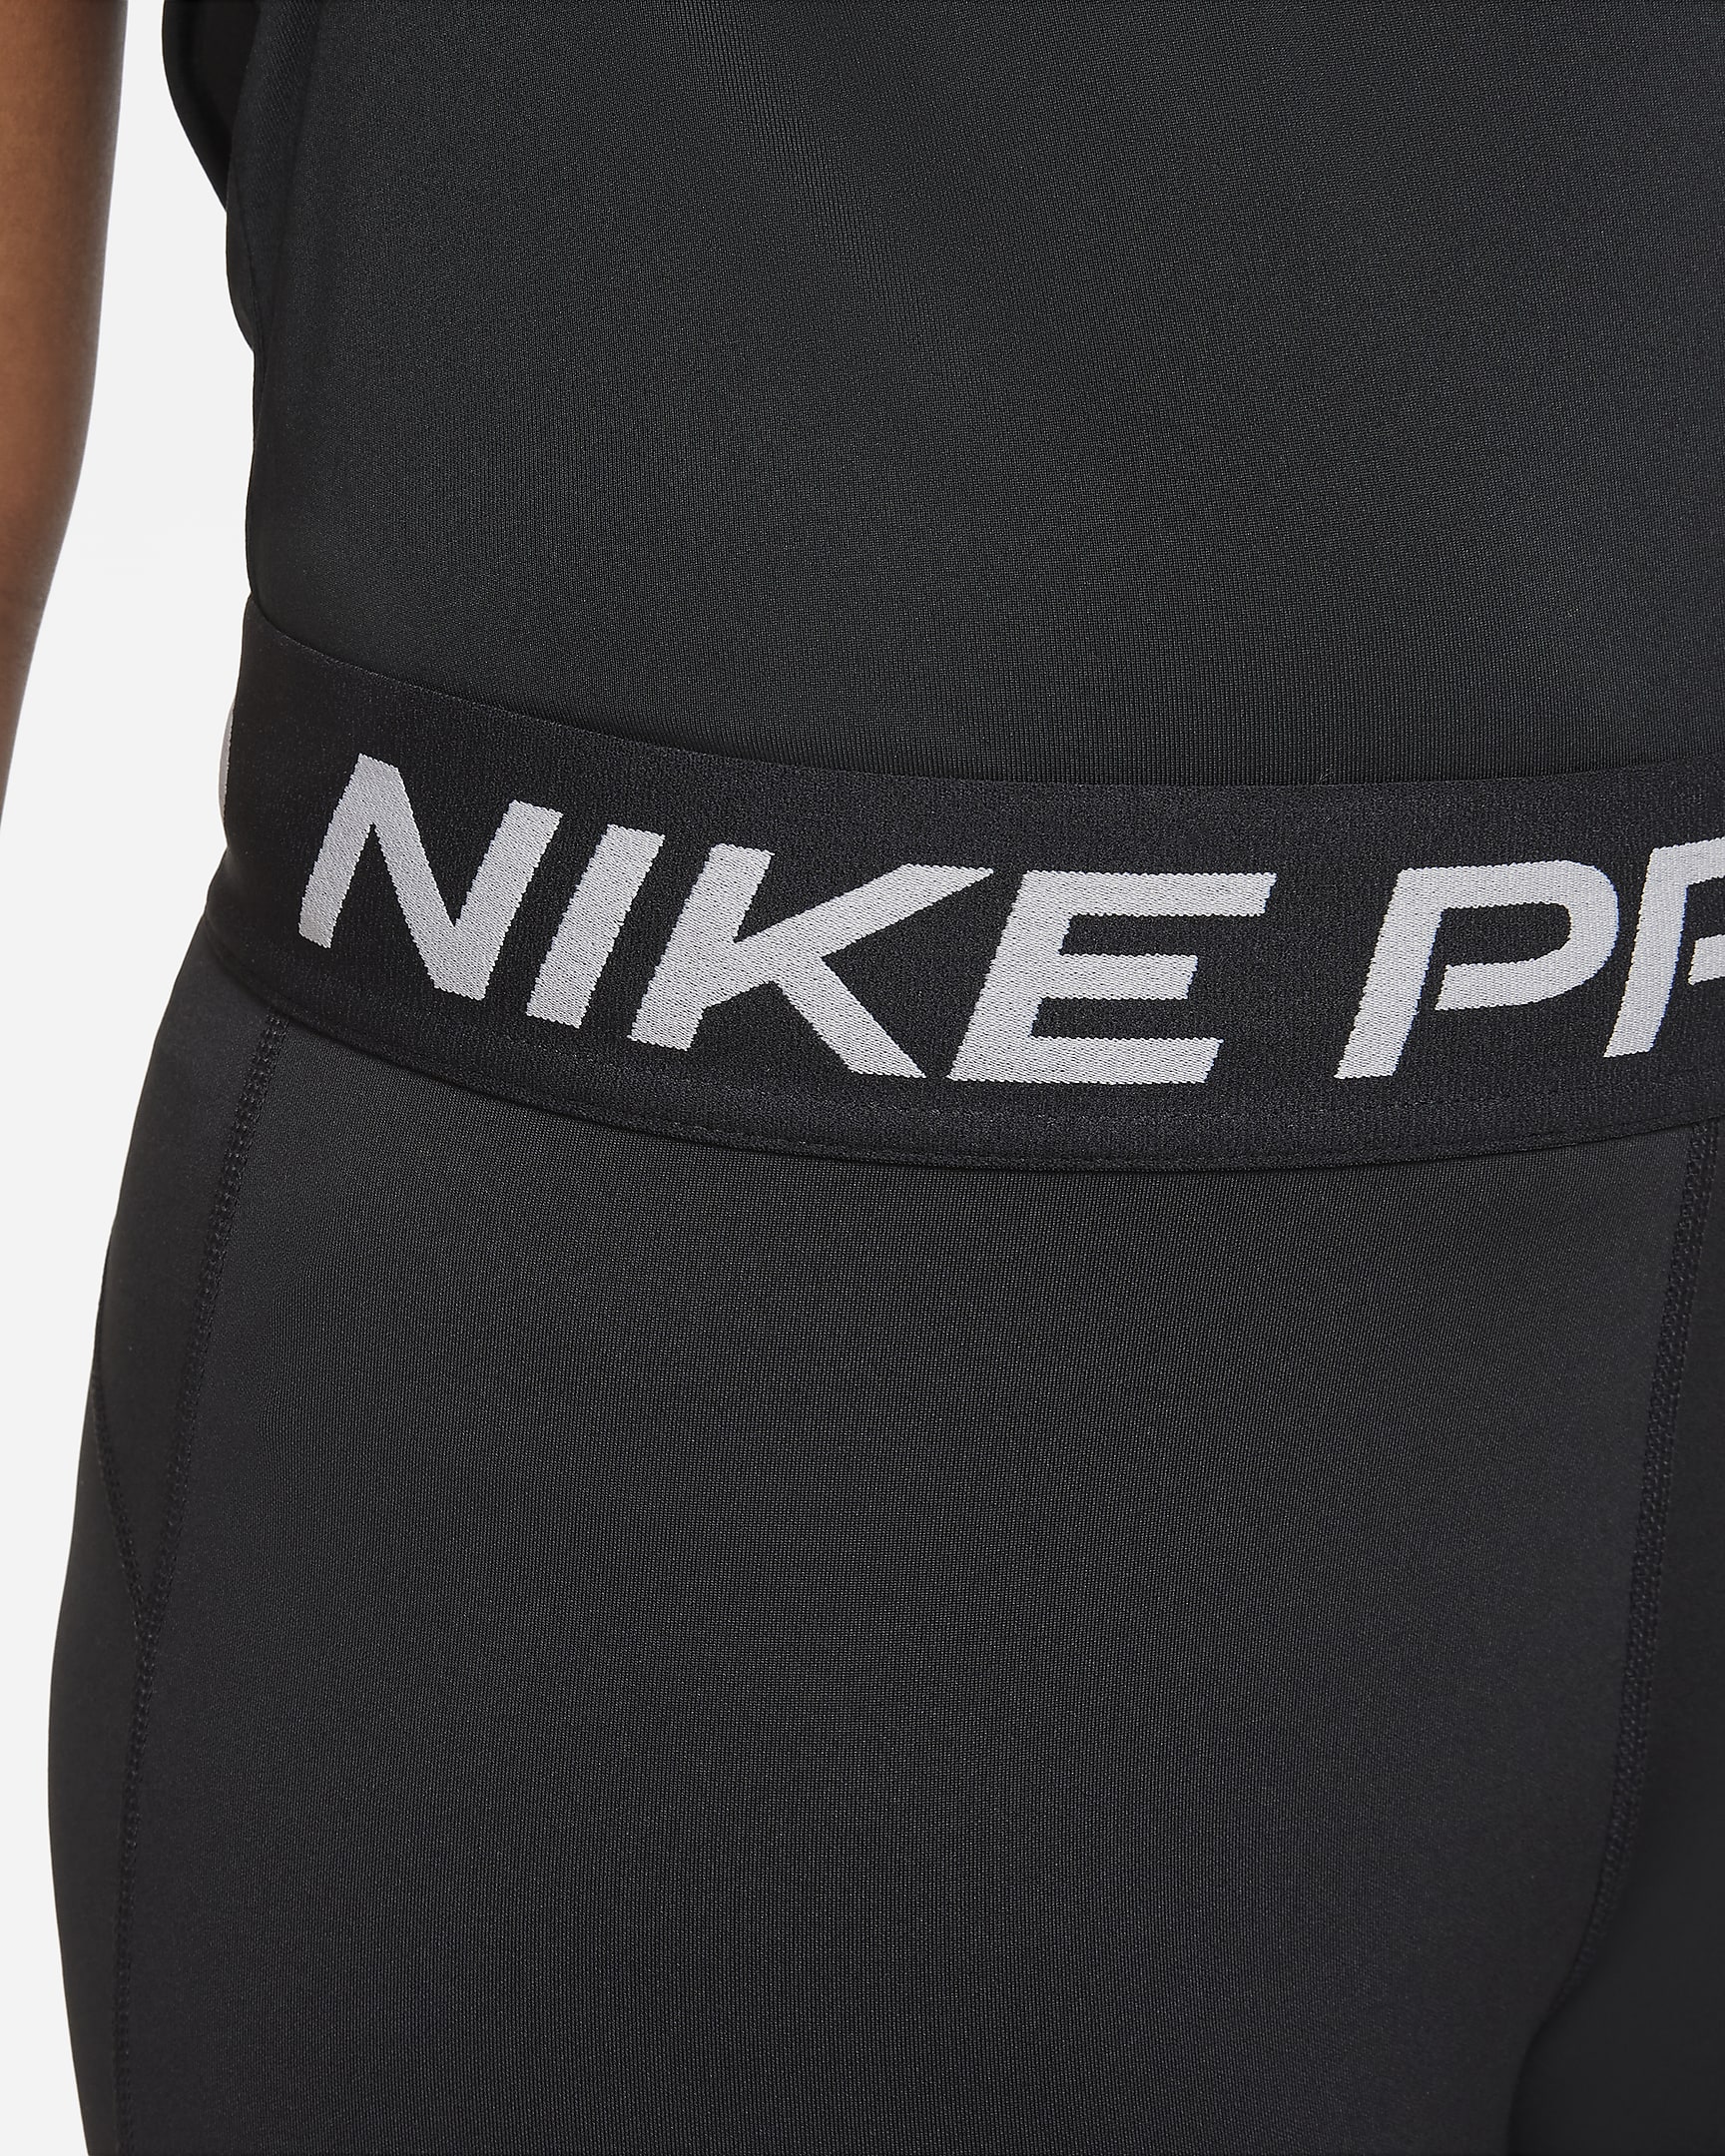 Shorts Nike Pro Dri-FIT för tjejer (utökade storlekar) - Svart/Vit